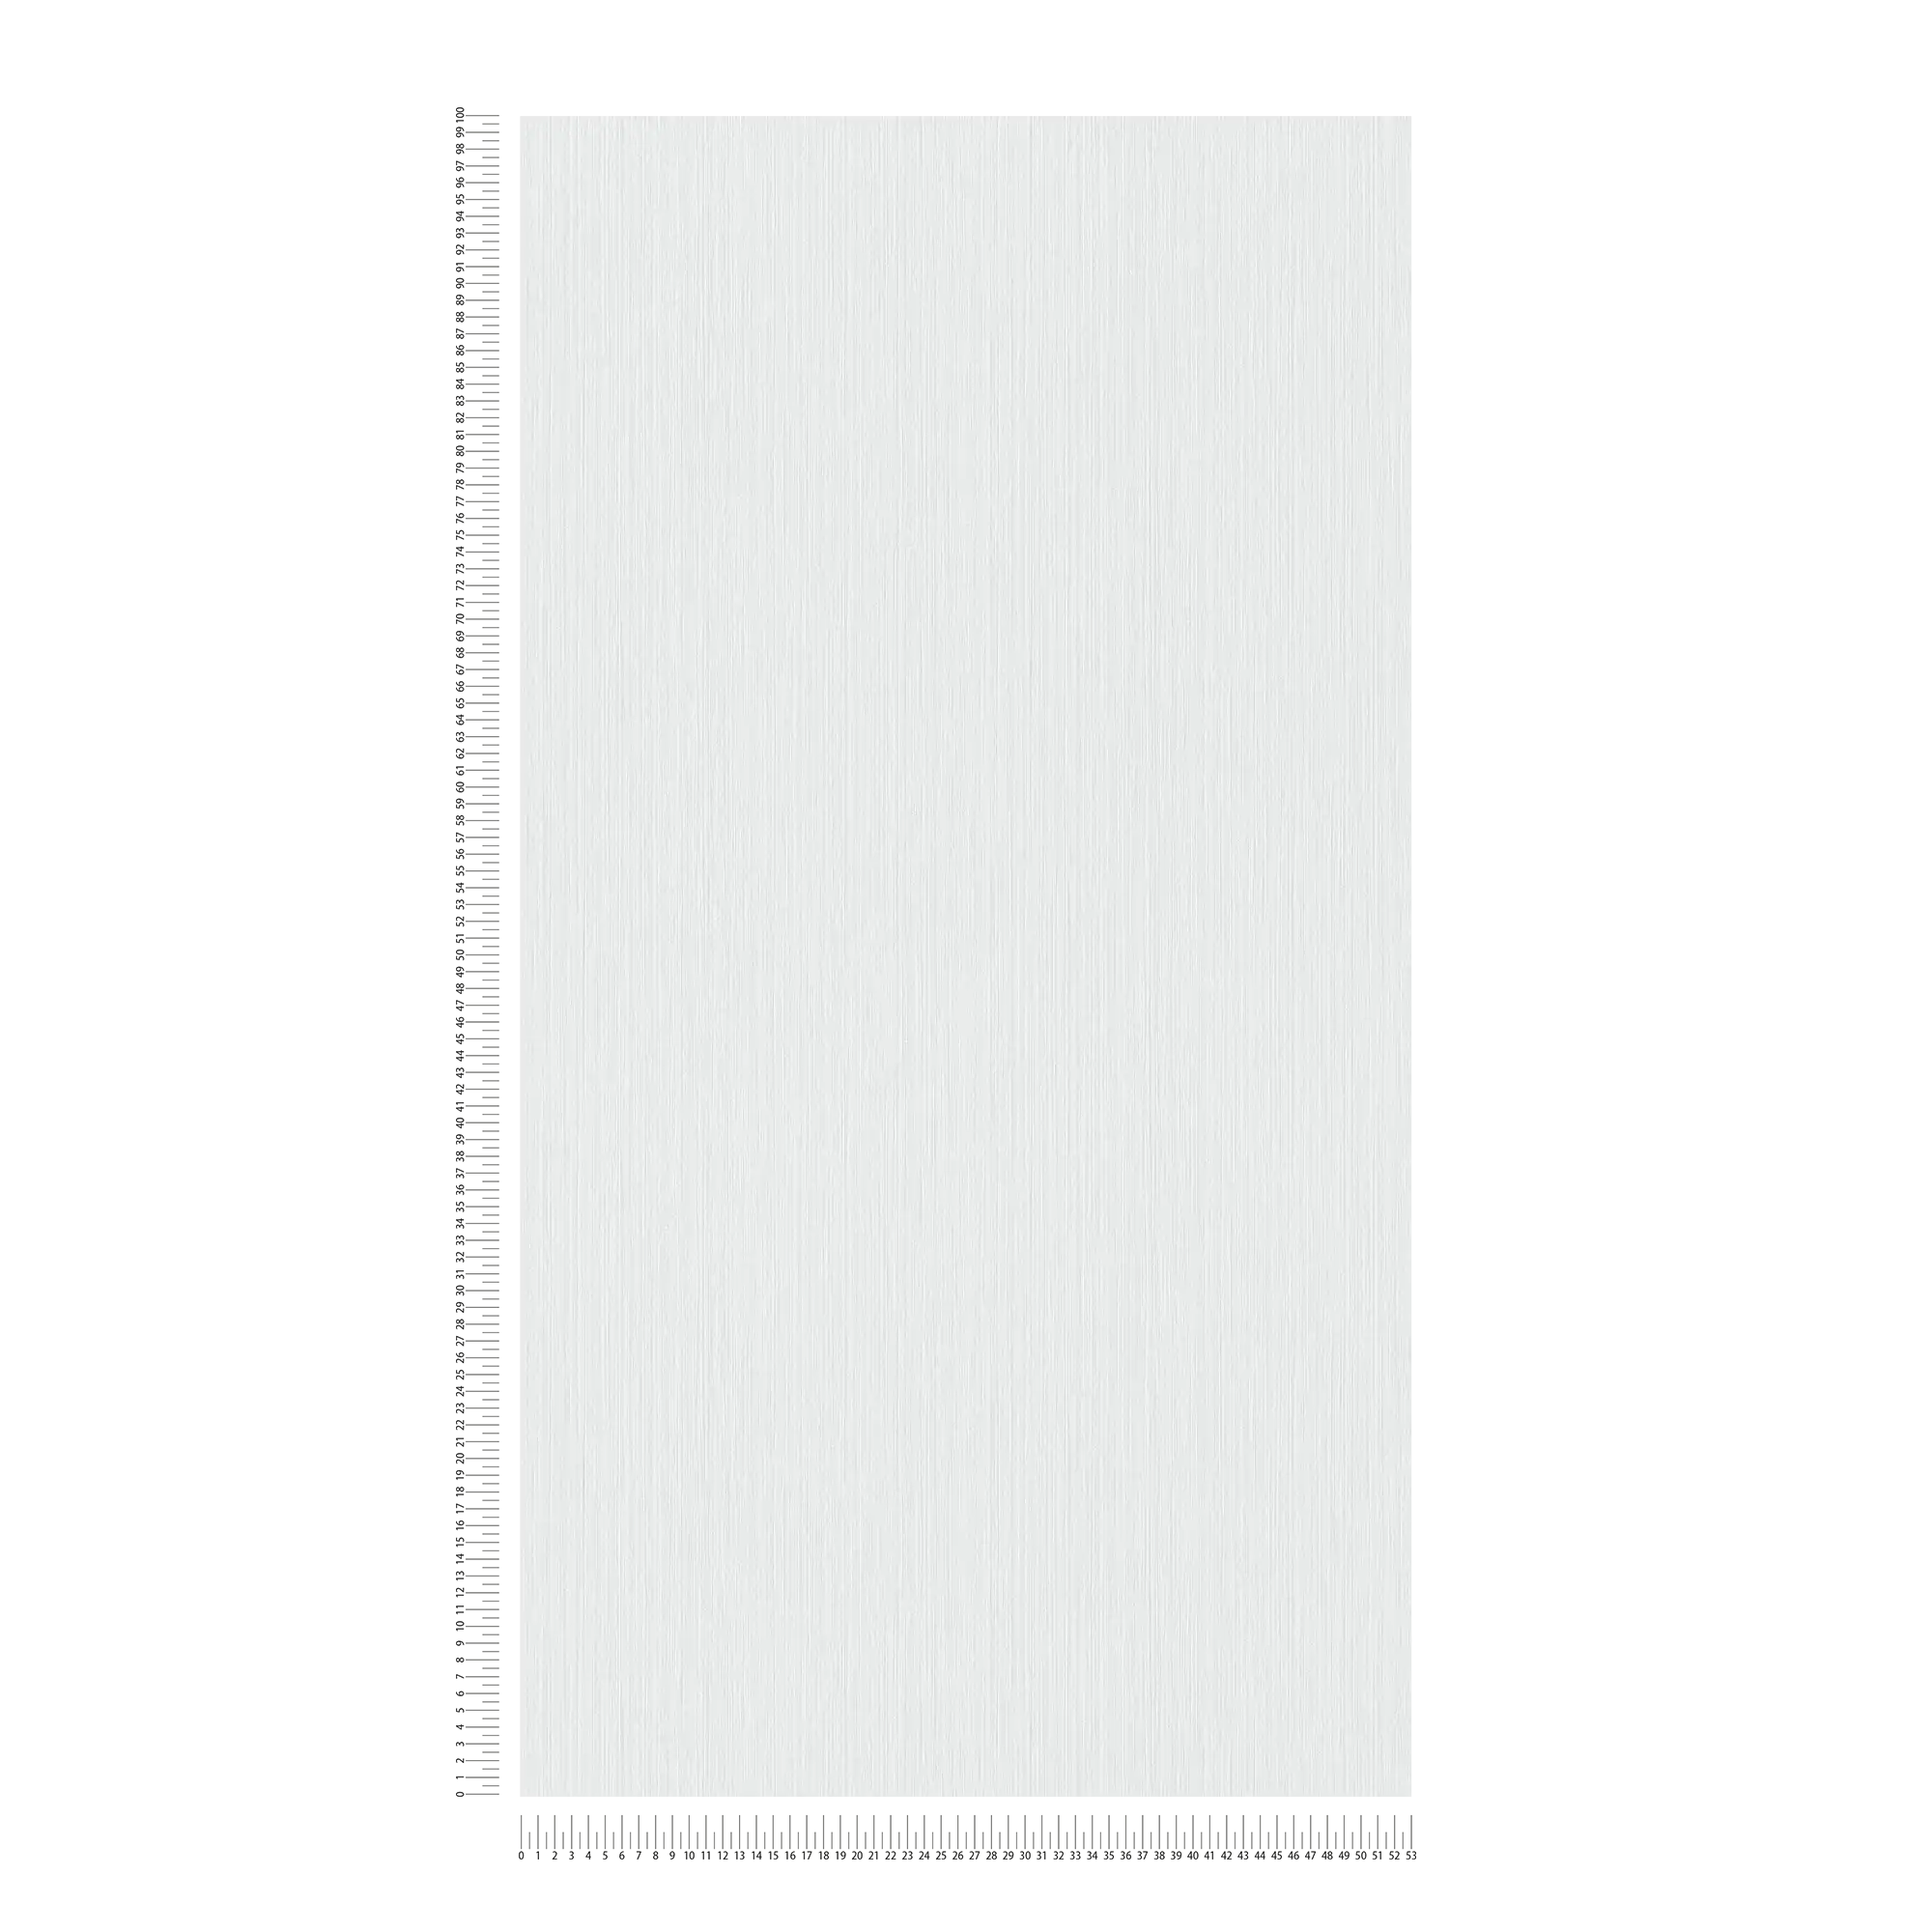             Papel pintado liso gris claro con efecto textil moteado de MICHALSKY
        